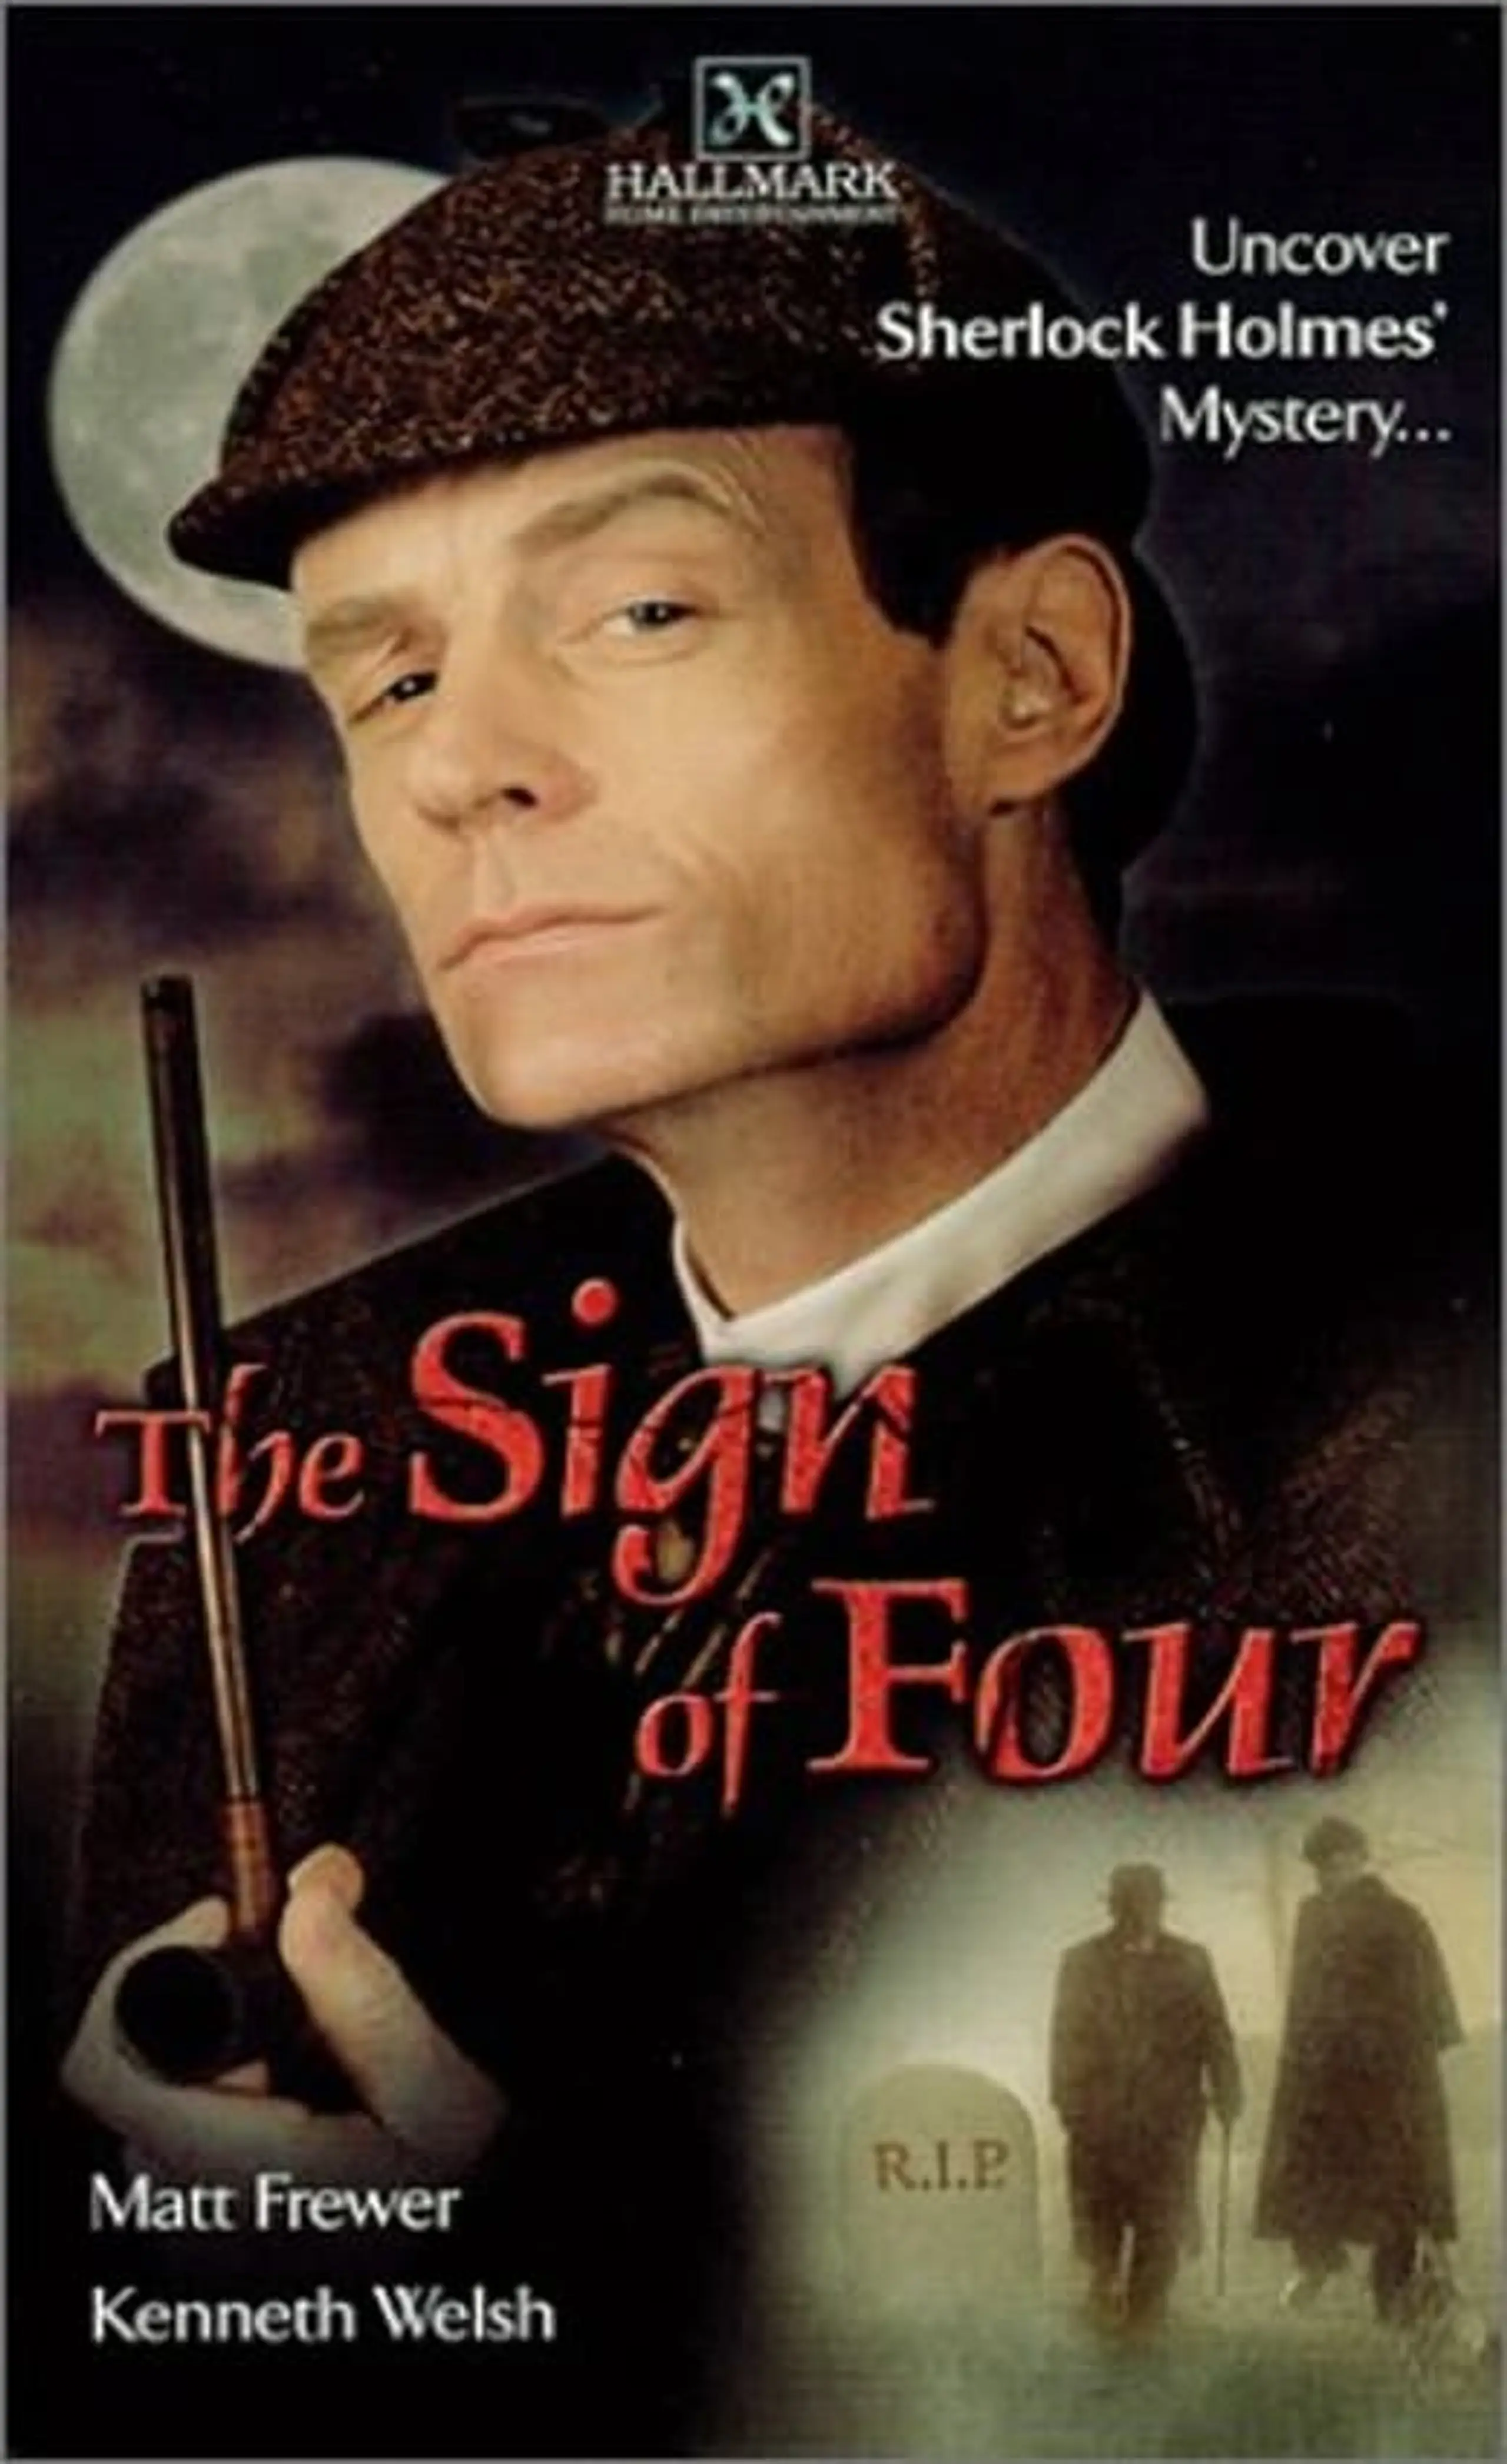 Sherlock Holmes - Das Zeichen der Vier